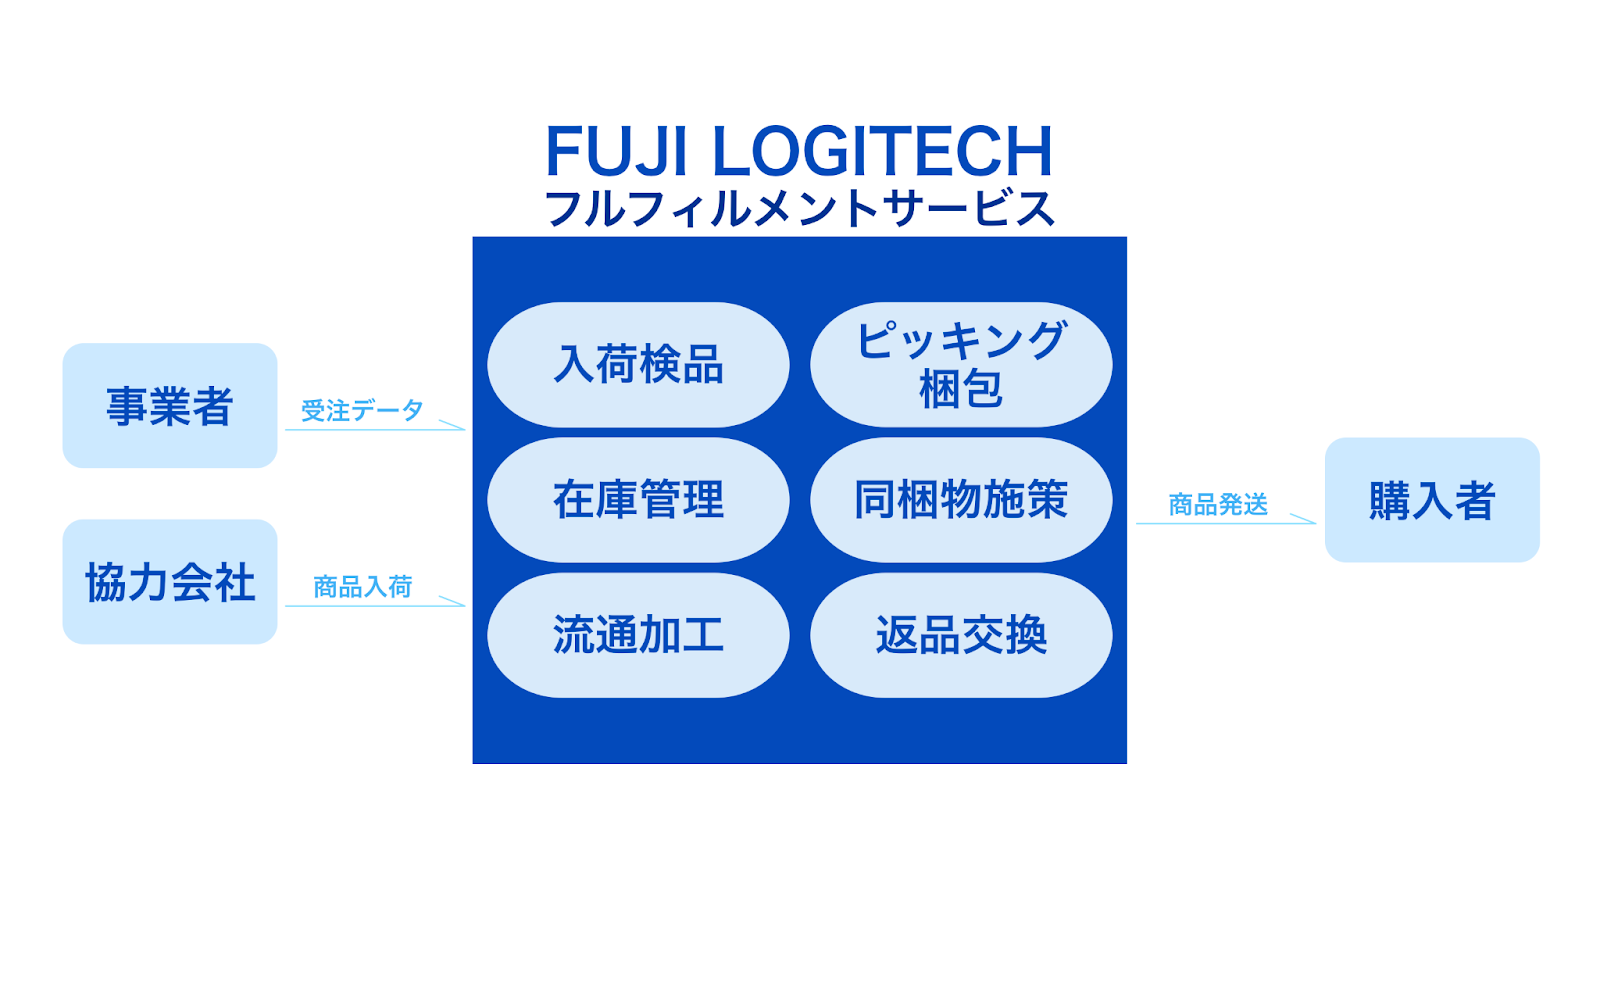 富士ロジテックのフルフィルメントサービスは、顧客の商品の在庫管理から梱包や配送まで、全ての作業を代行してくれます。